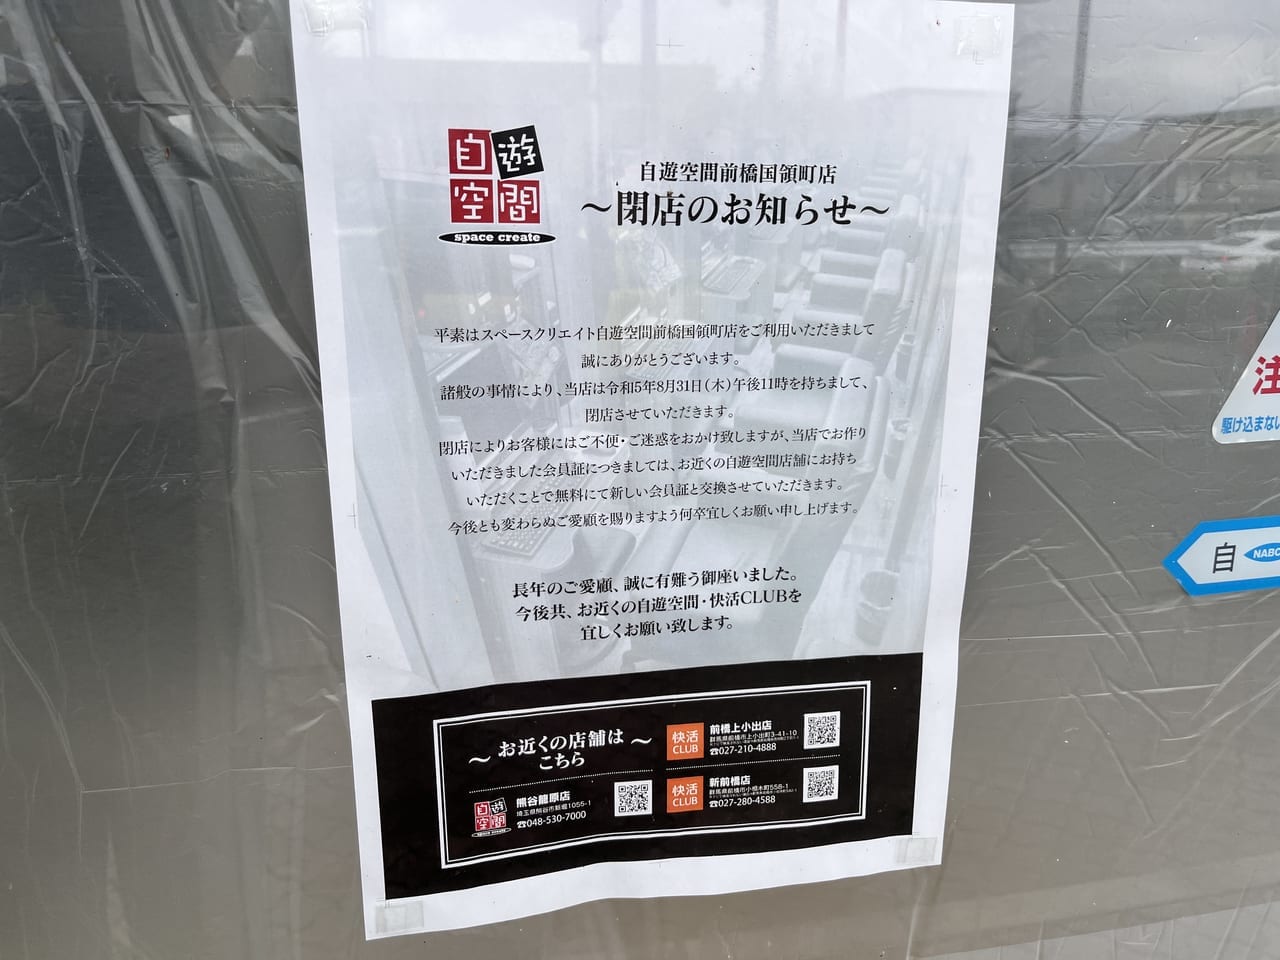 「自遊空間 前橋国領町店」閉店のお知らせの掲示